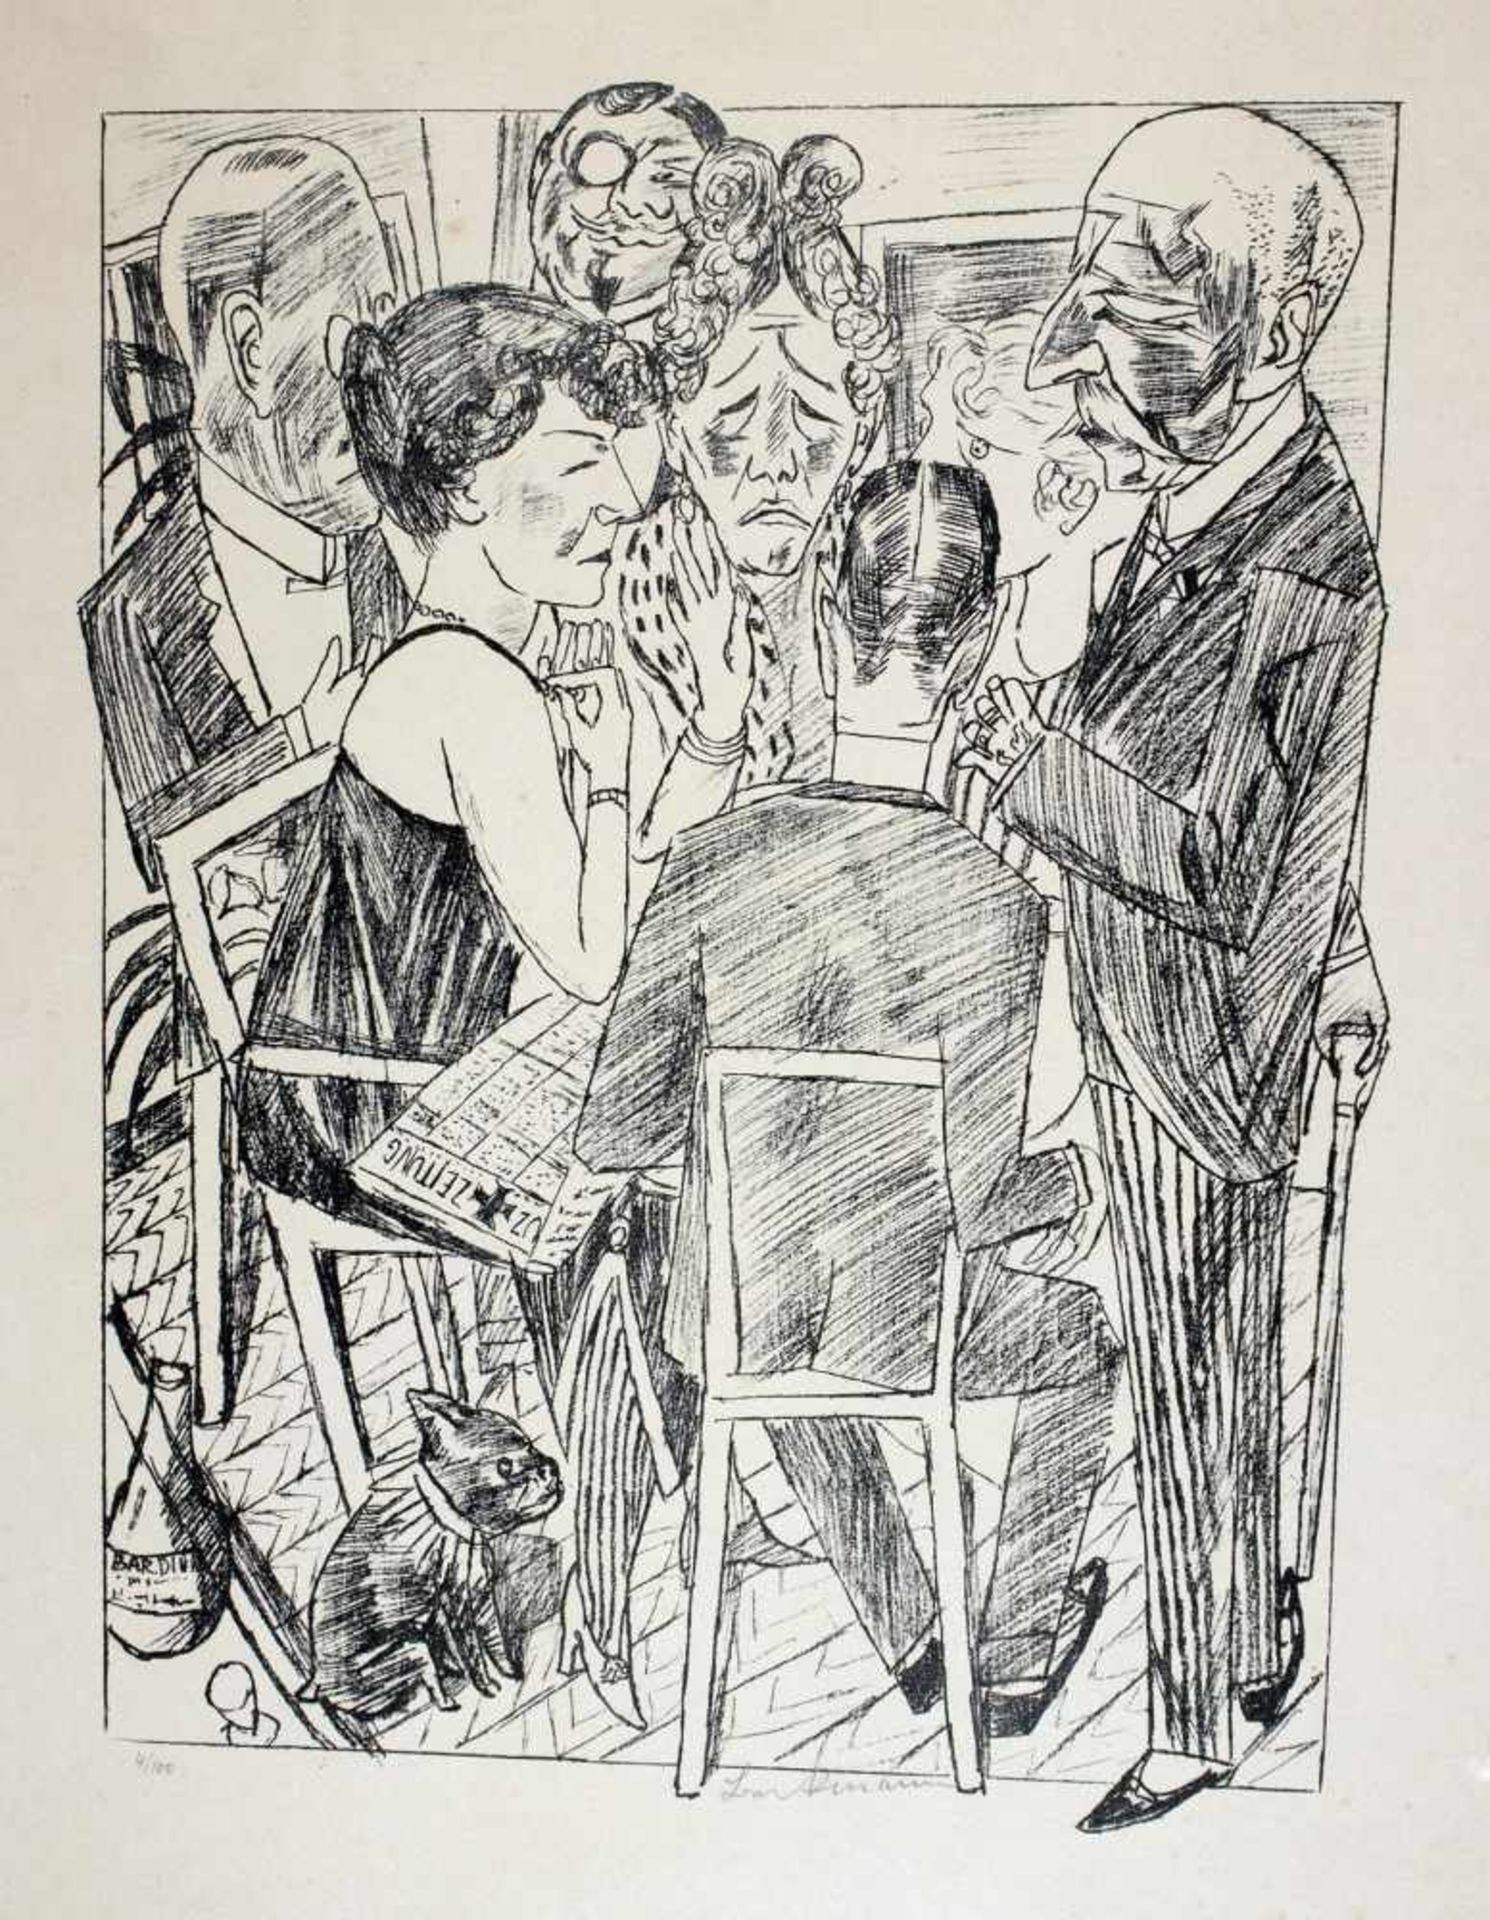 Max Beckmann. Die Enttäuschten I. Lithographie. 1922. 49 : 37,6 cm (68 : 53,5 cm). Signiert und